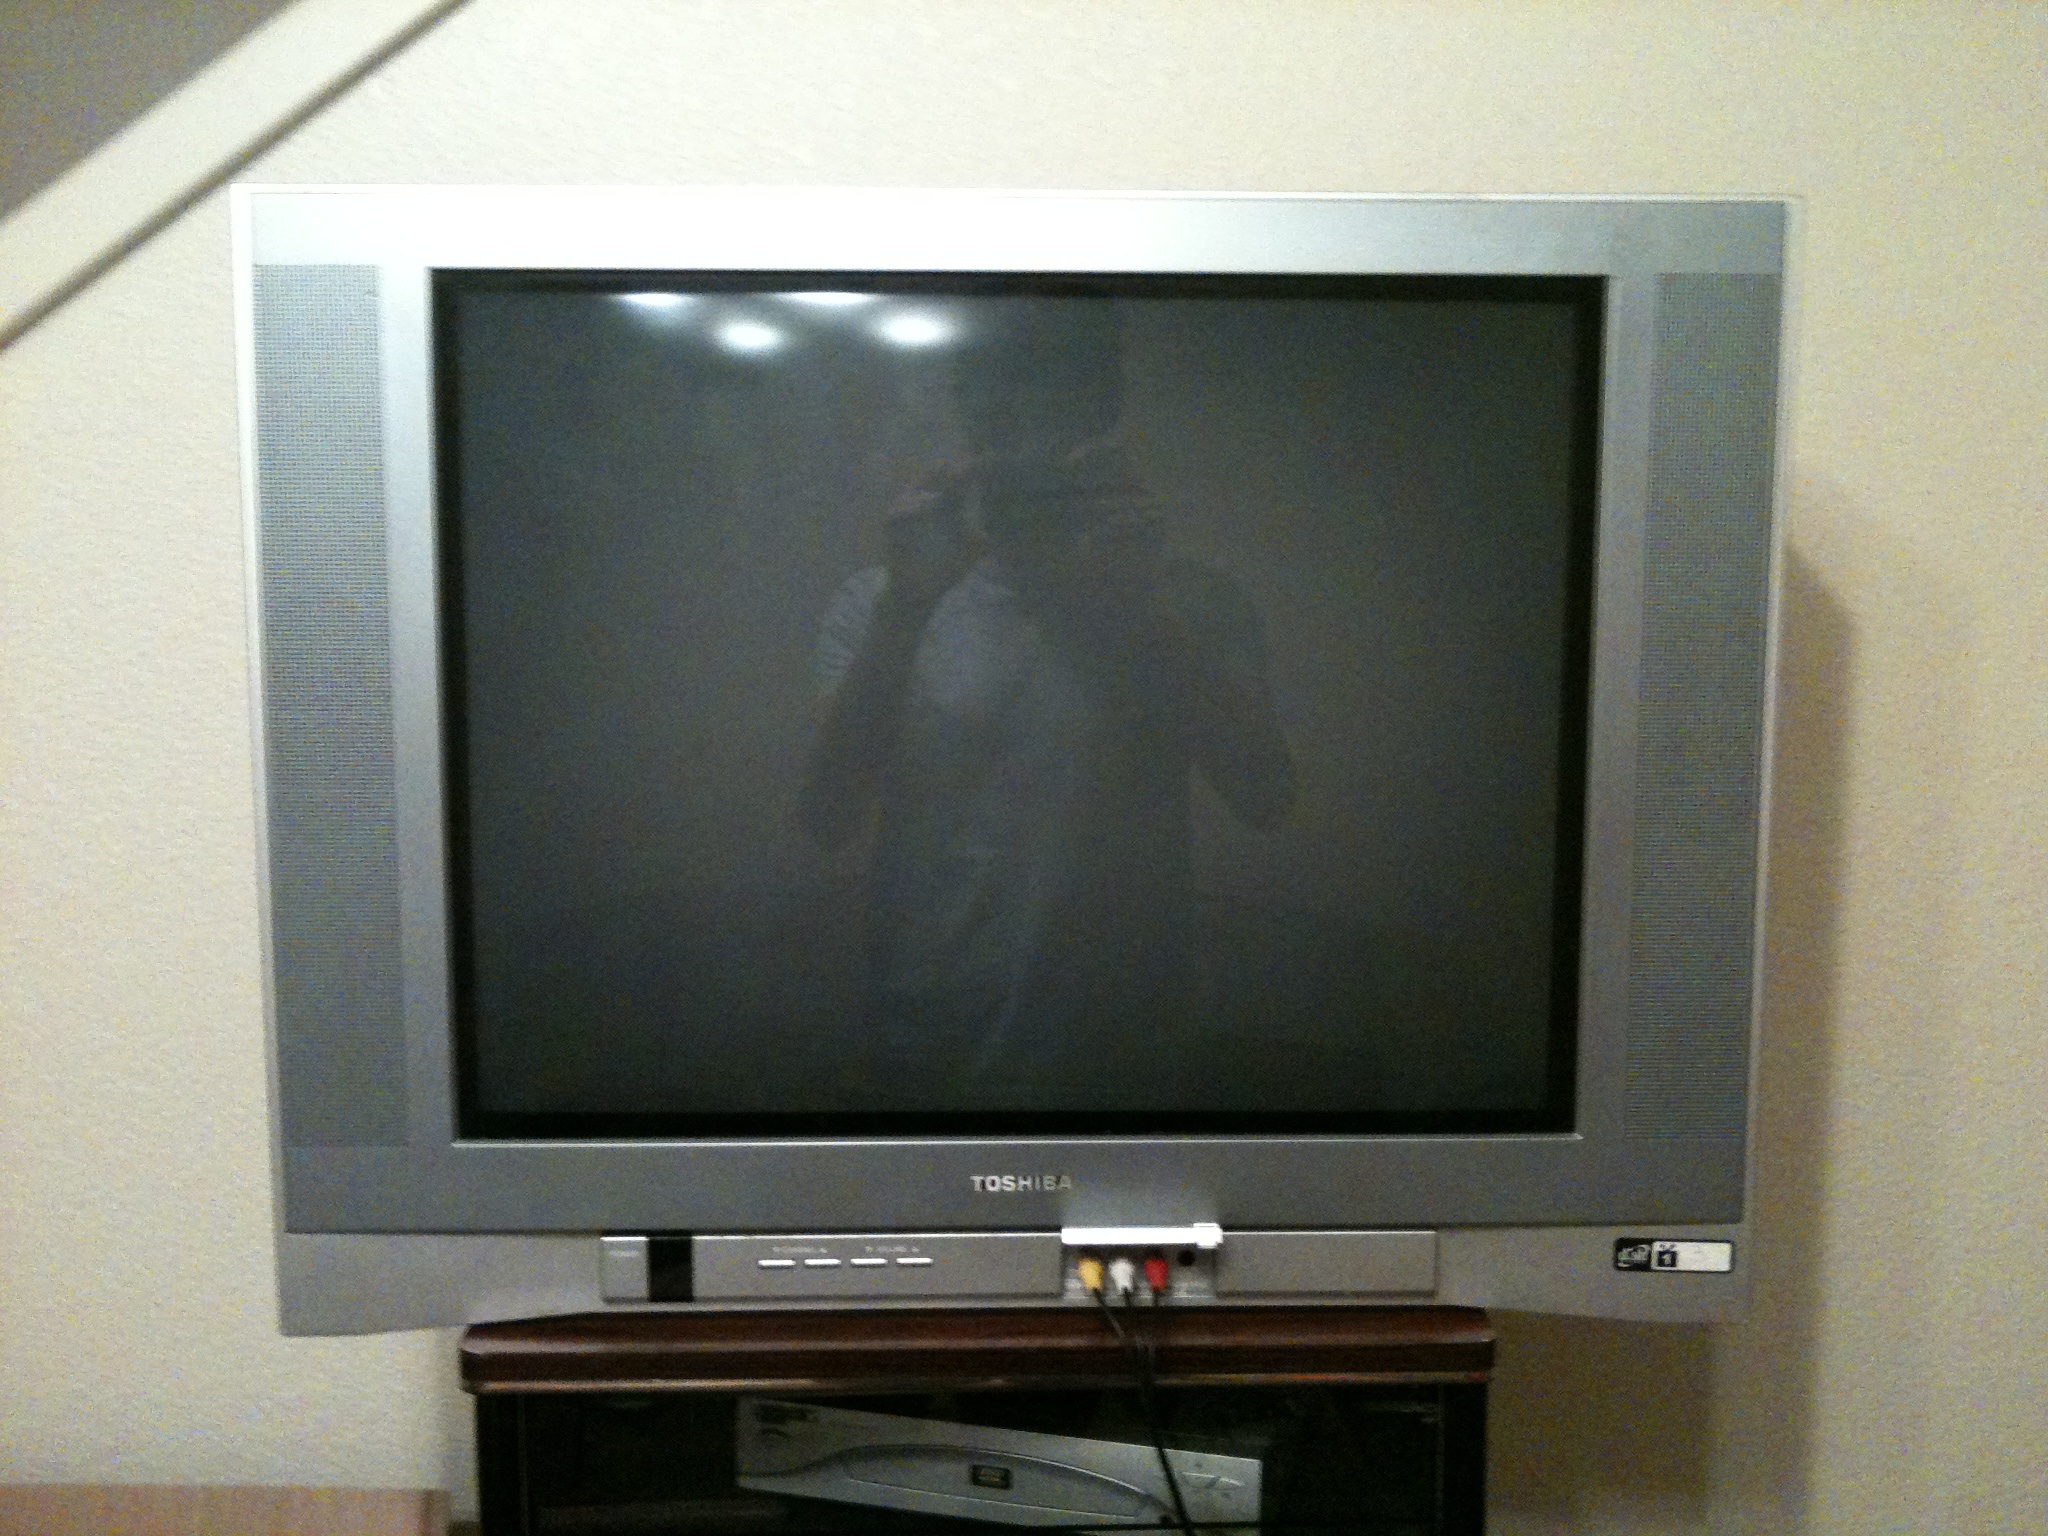 Телевизор тошиба есть. Toshiba TV 2150. Toshiba st9000 телевизор. Toshiba TV 2001. Toshiba REGZA телевизор 2004 года.